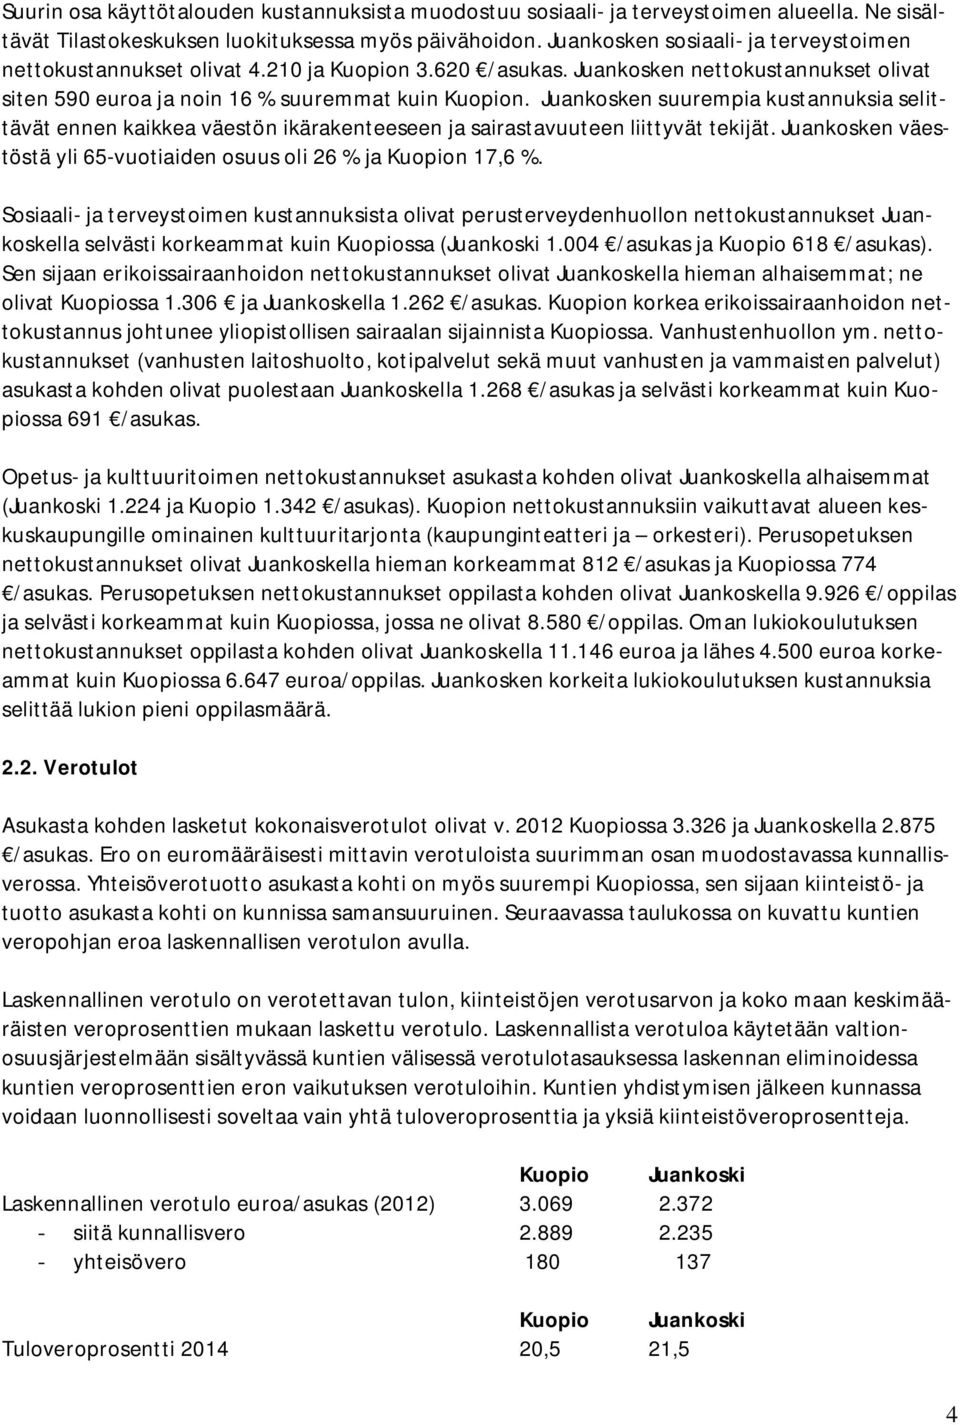 Juankosken suurempia kustannuksia selittävät ennen kaikkea väestön ikärakenteeseen ja sairastavuuteen liittyvät tekijät. Juankosken väestöstä yli 65-vuotiaiden osuus oli 26 % ja Kuopion 17,6 %.